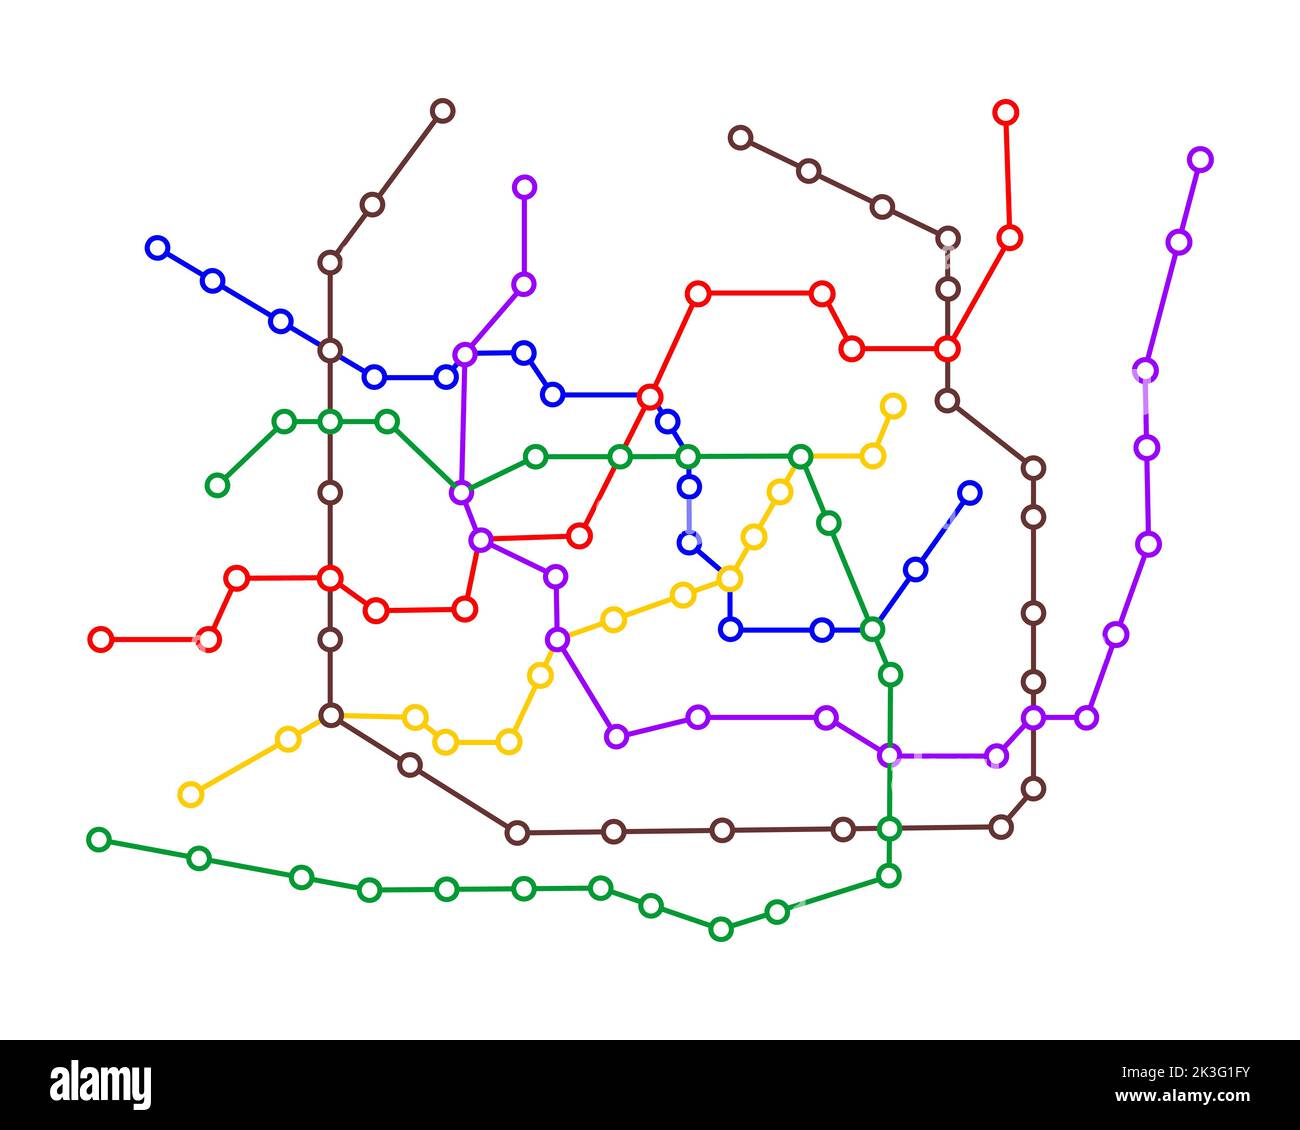 Modello mappa metropolitana. Piano della metropolitana con molte linee colorate. Diagramma infografico dello schema della rete pubblica di trasporto rapido isolato su sfondo bianco. Illustrazione piatta vettoriale Illustrazione Vettoriale